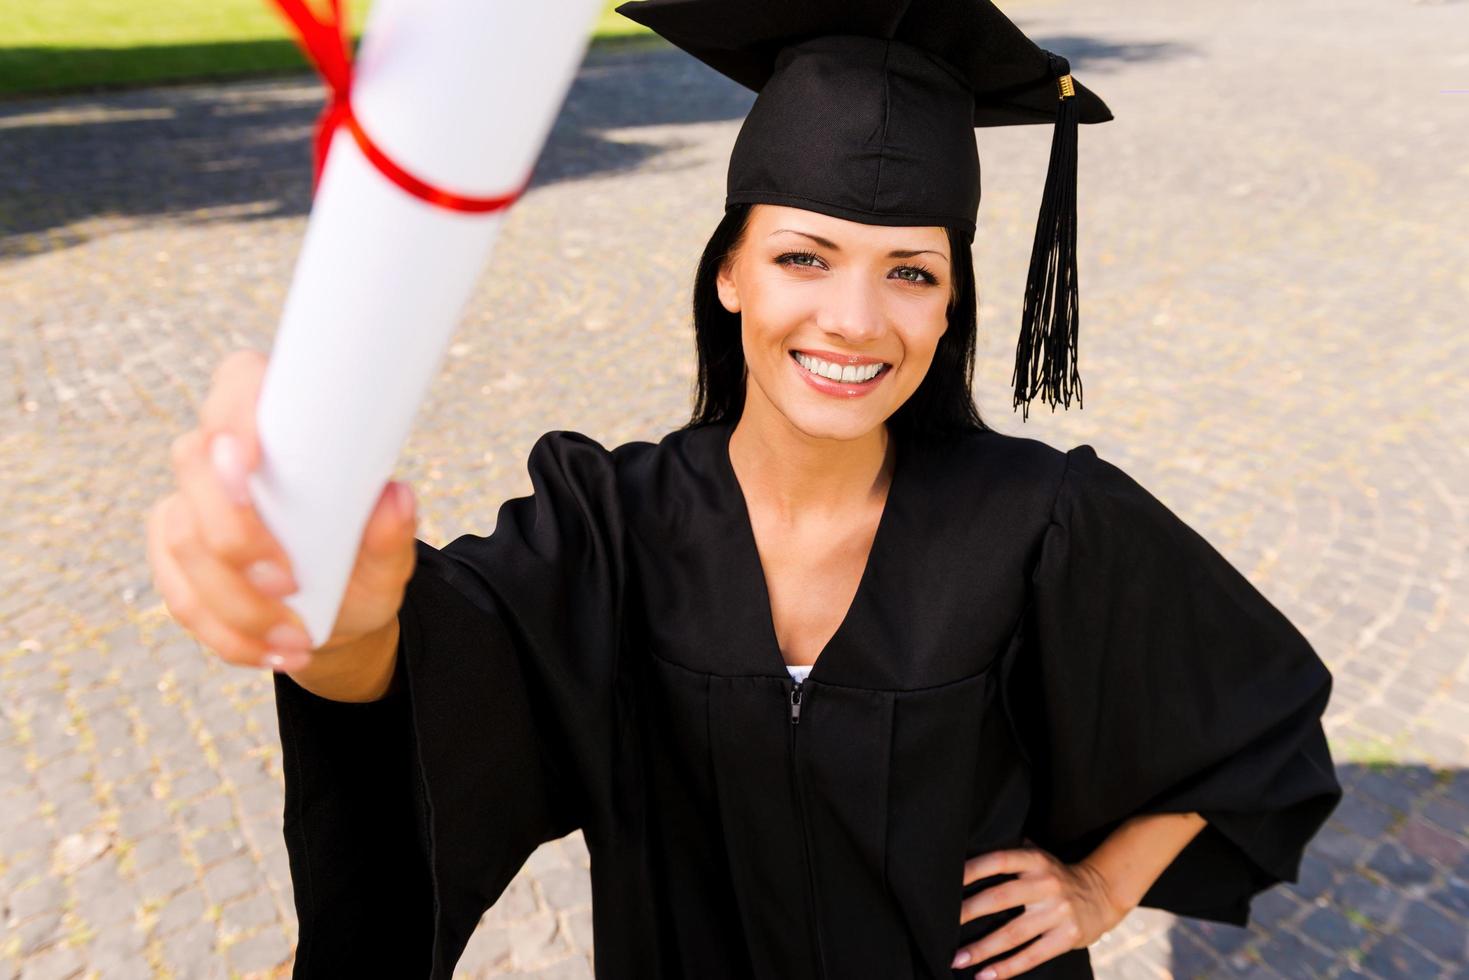 glücklicher Absolvent mit Diplom. Draufsicht einer glücklichen jungen Frau im Abschlusskleid, die ihr Diplom zeigt und lächelt foto